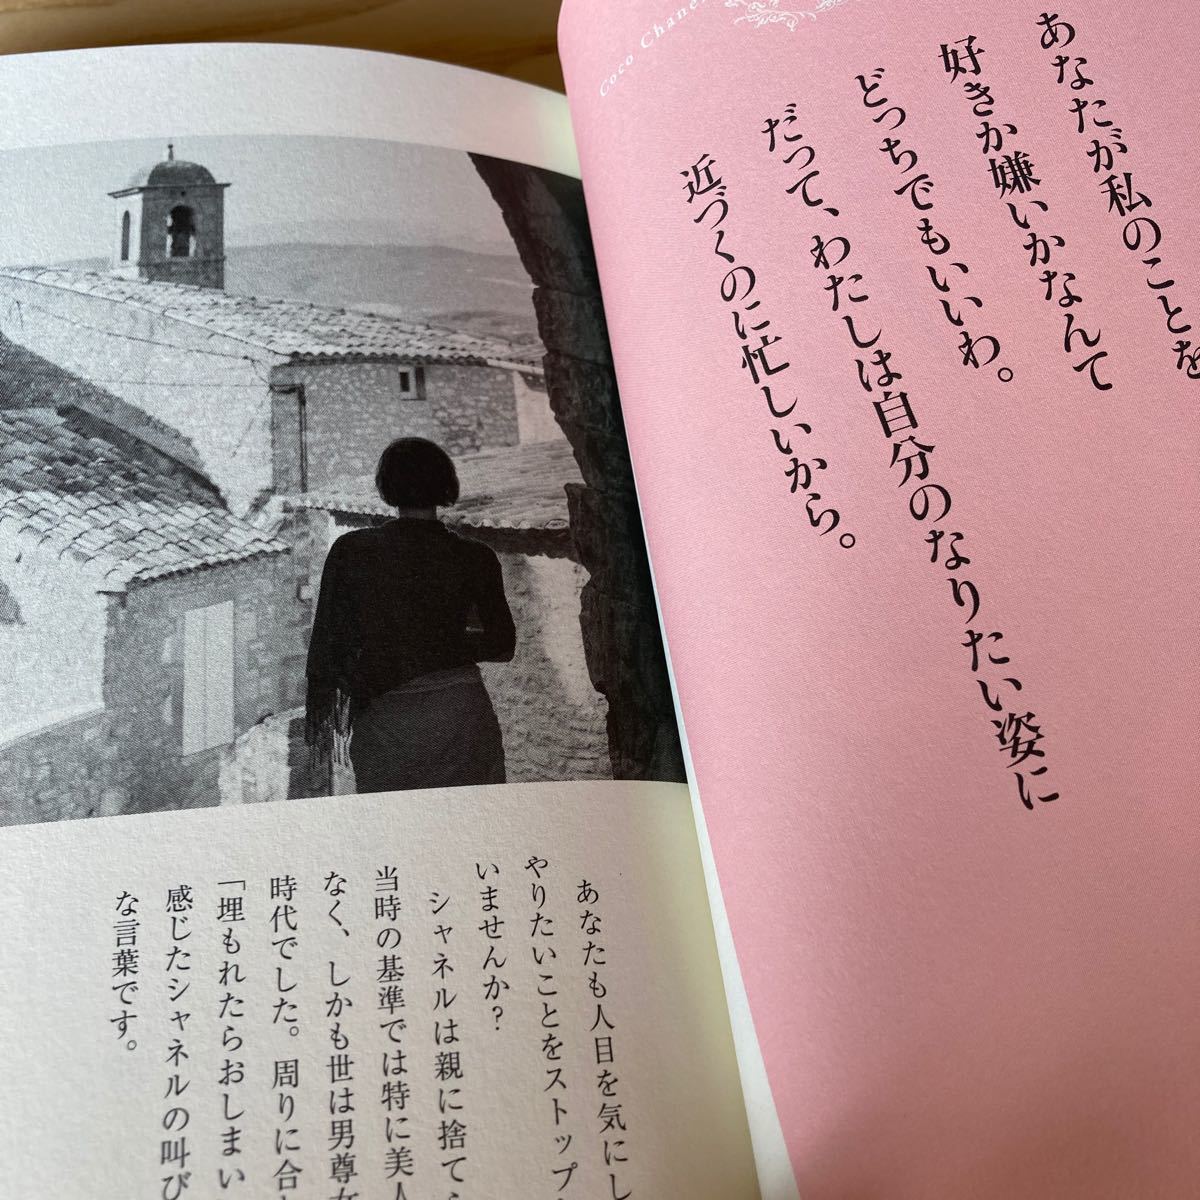 中古日本文学 ≪日本文学≫ ココ・シャネル 99の言葉 / 酒田真実　